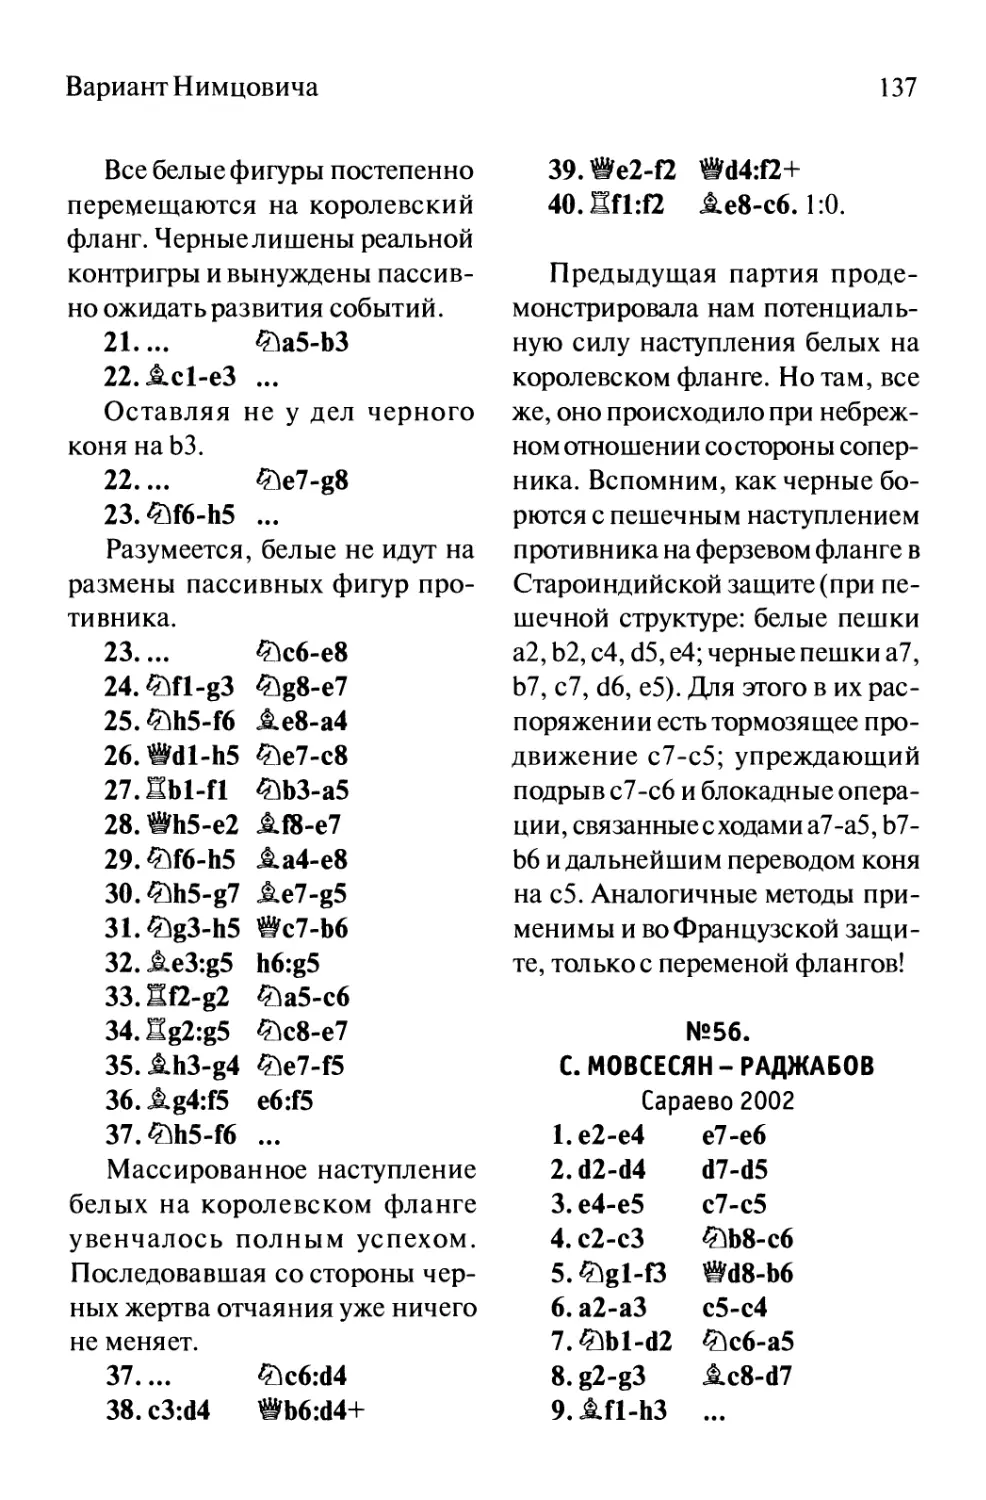 №56. С. Мовсесян - Раджабов